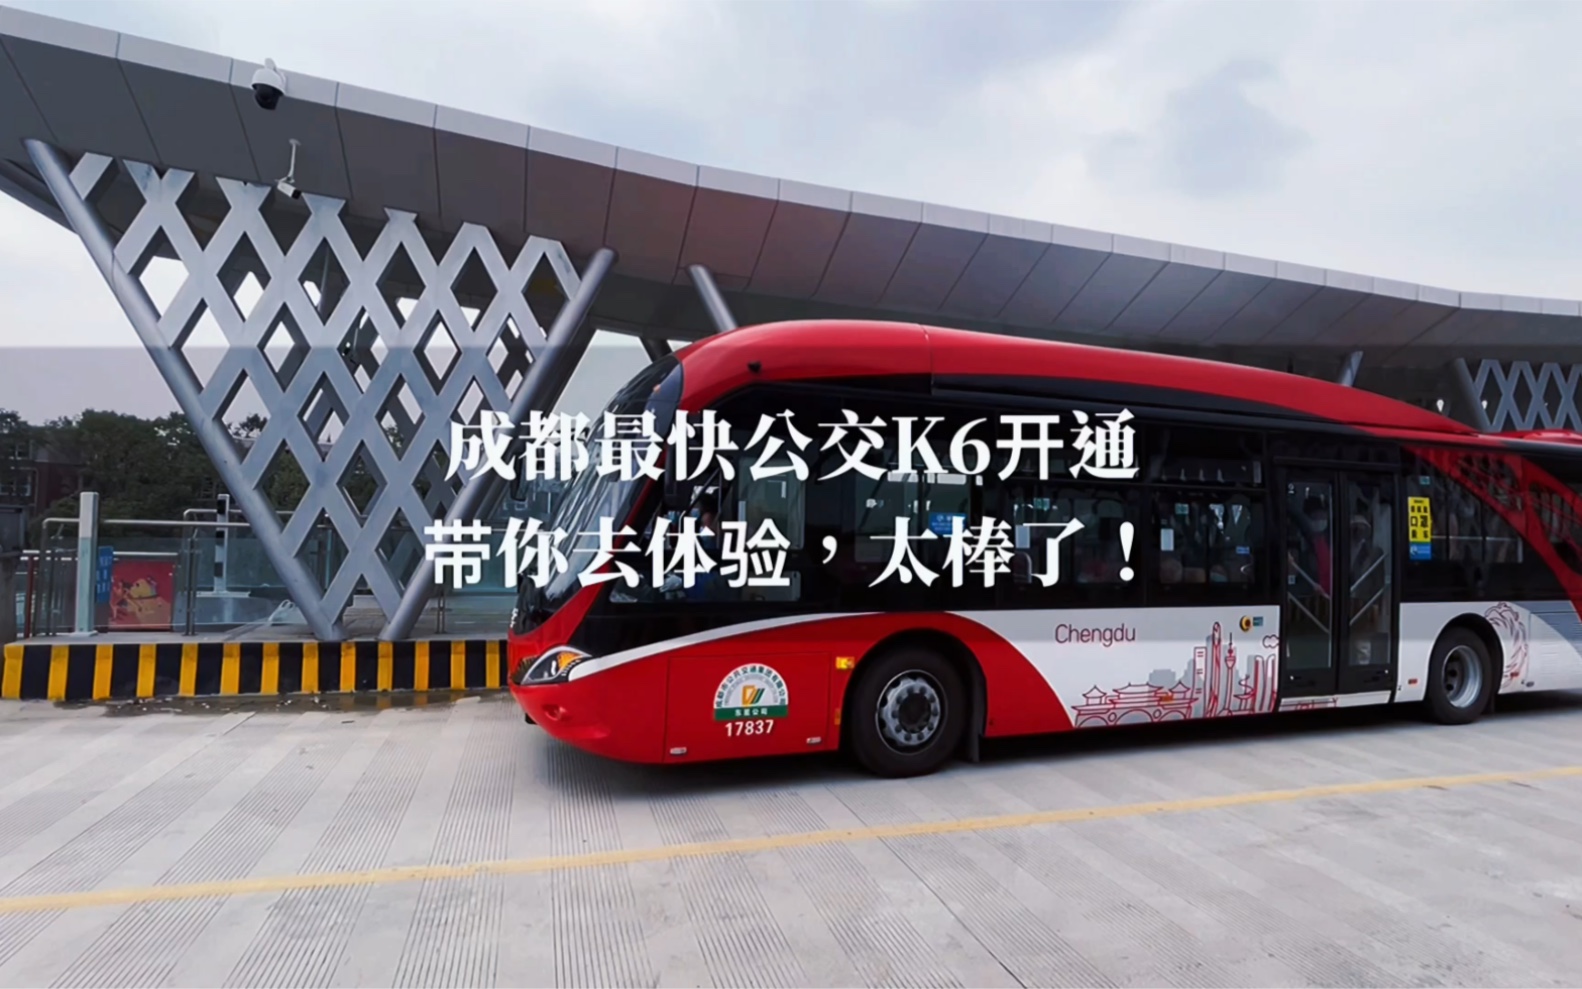 成都k6公交车图片